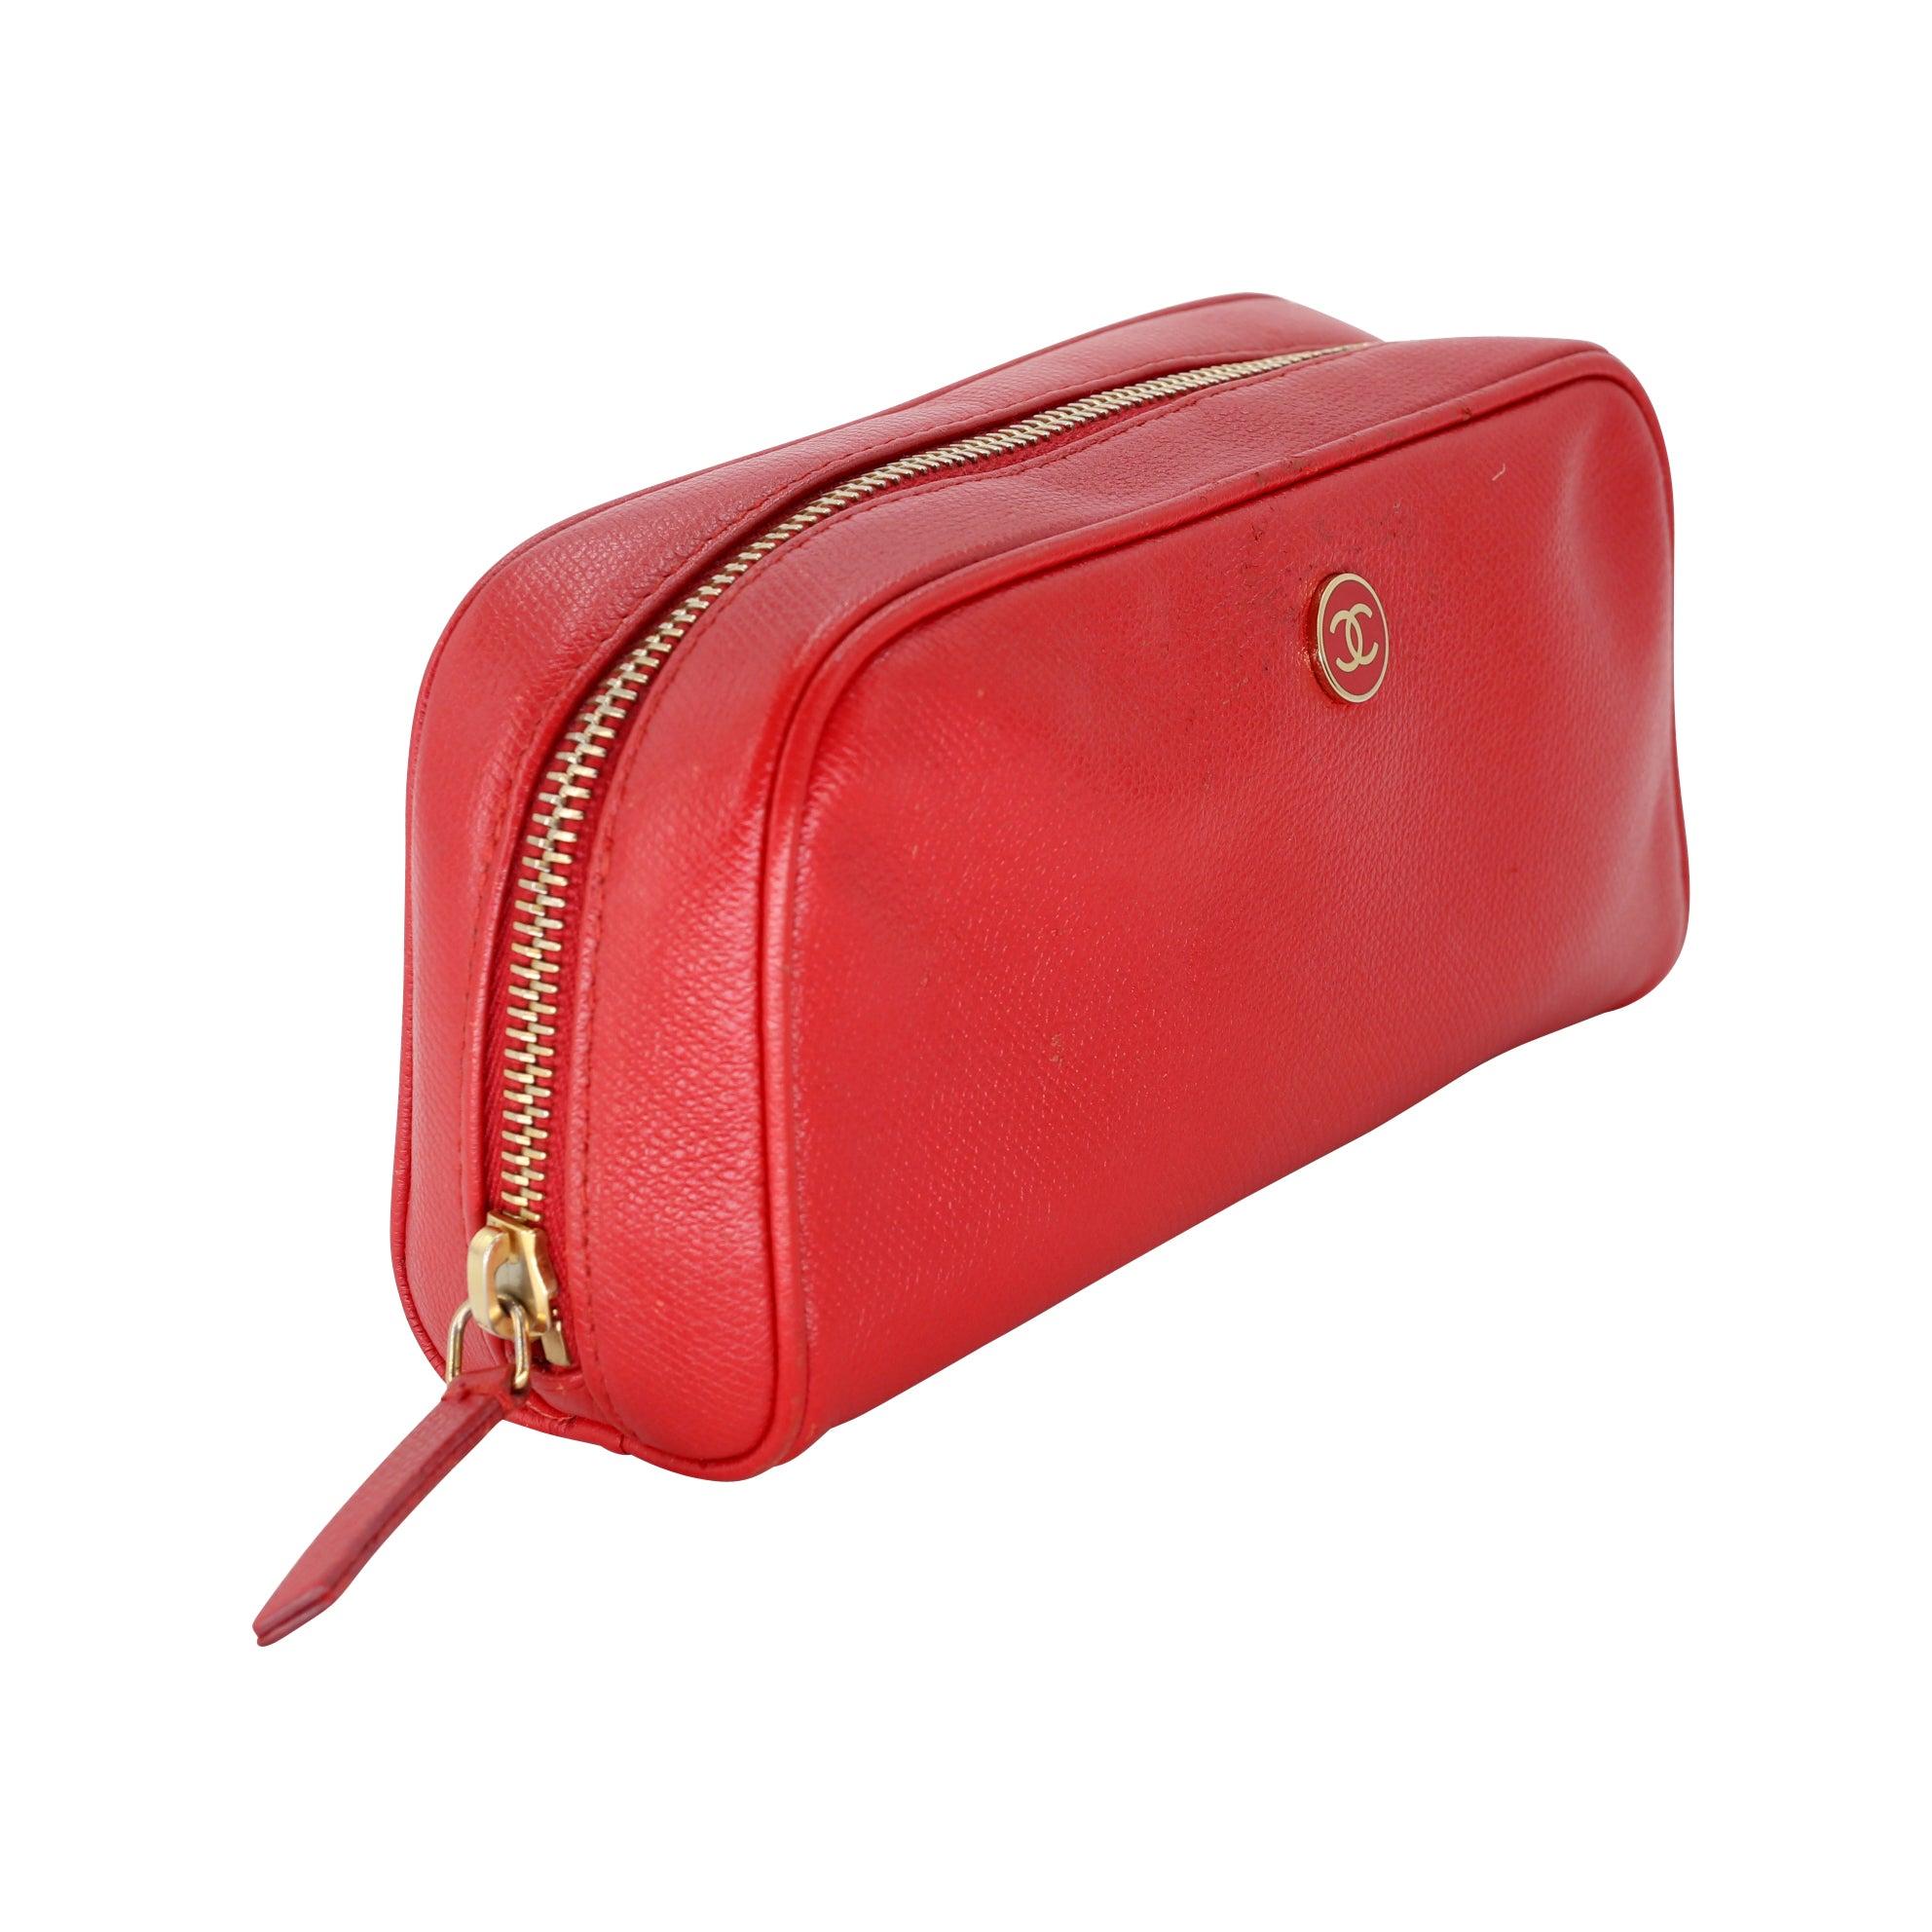 Diese prächtige rote Chanel Reise Make-up Tasche Tasche umfasst Unterschrift Kaviar Leder außen mit CC Monogramm auf der Vorderseite Hardware Innenraum umfasst CC Monogramm rundum gestempelt. Die Reiseschminktasche ist perfekt für den täglichen